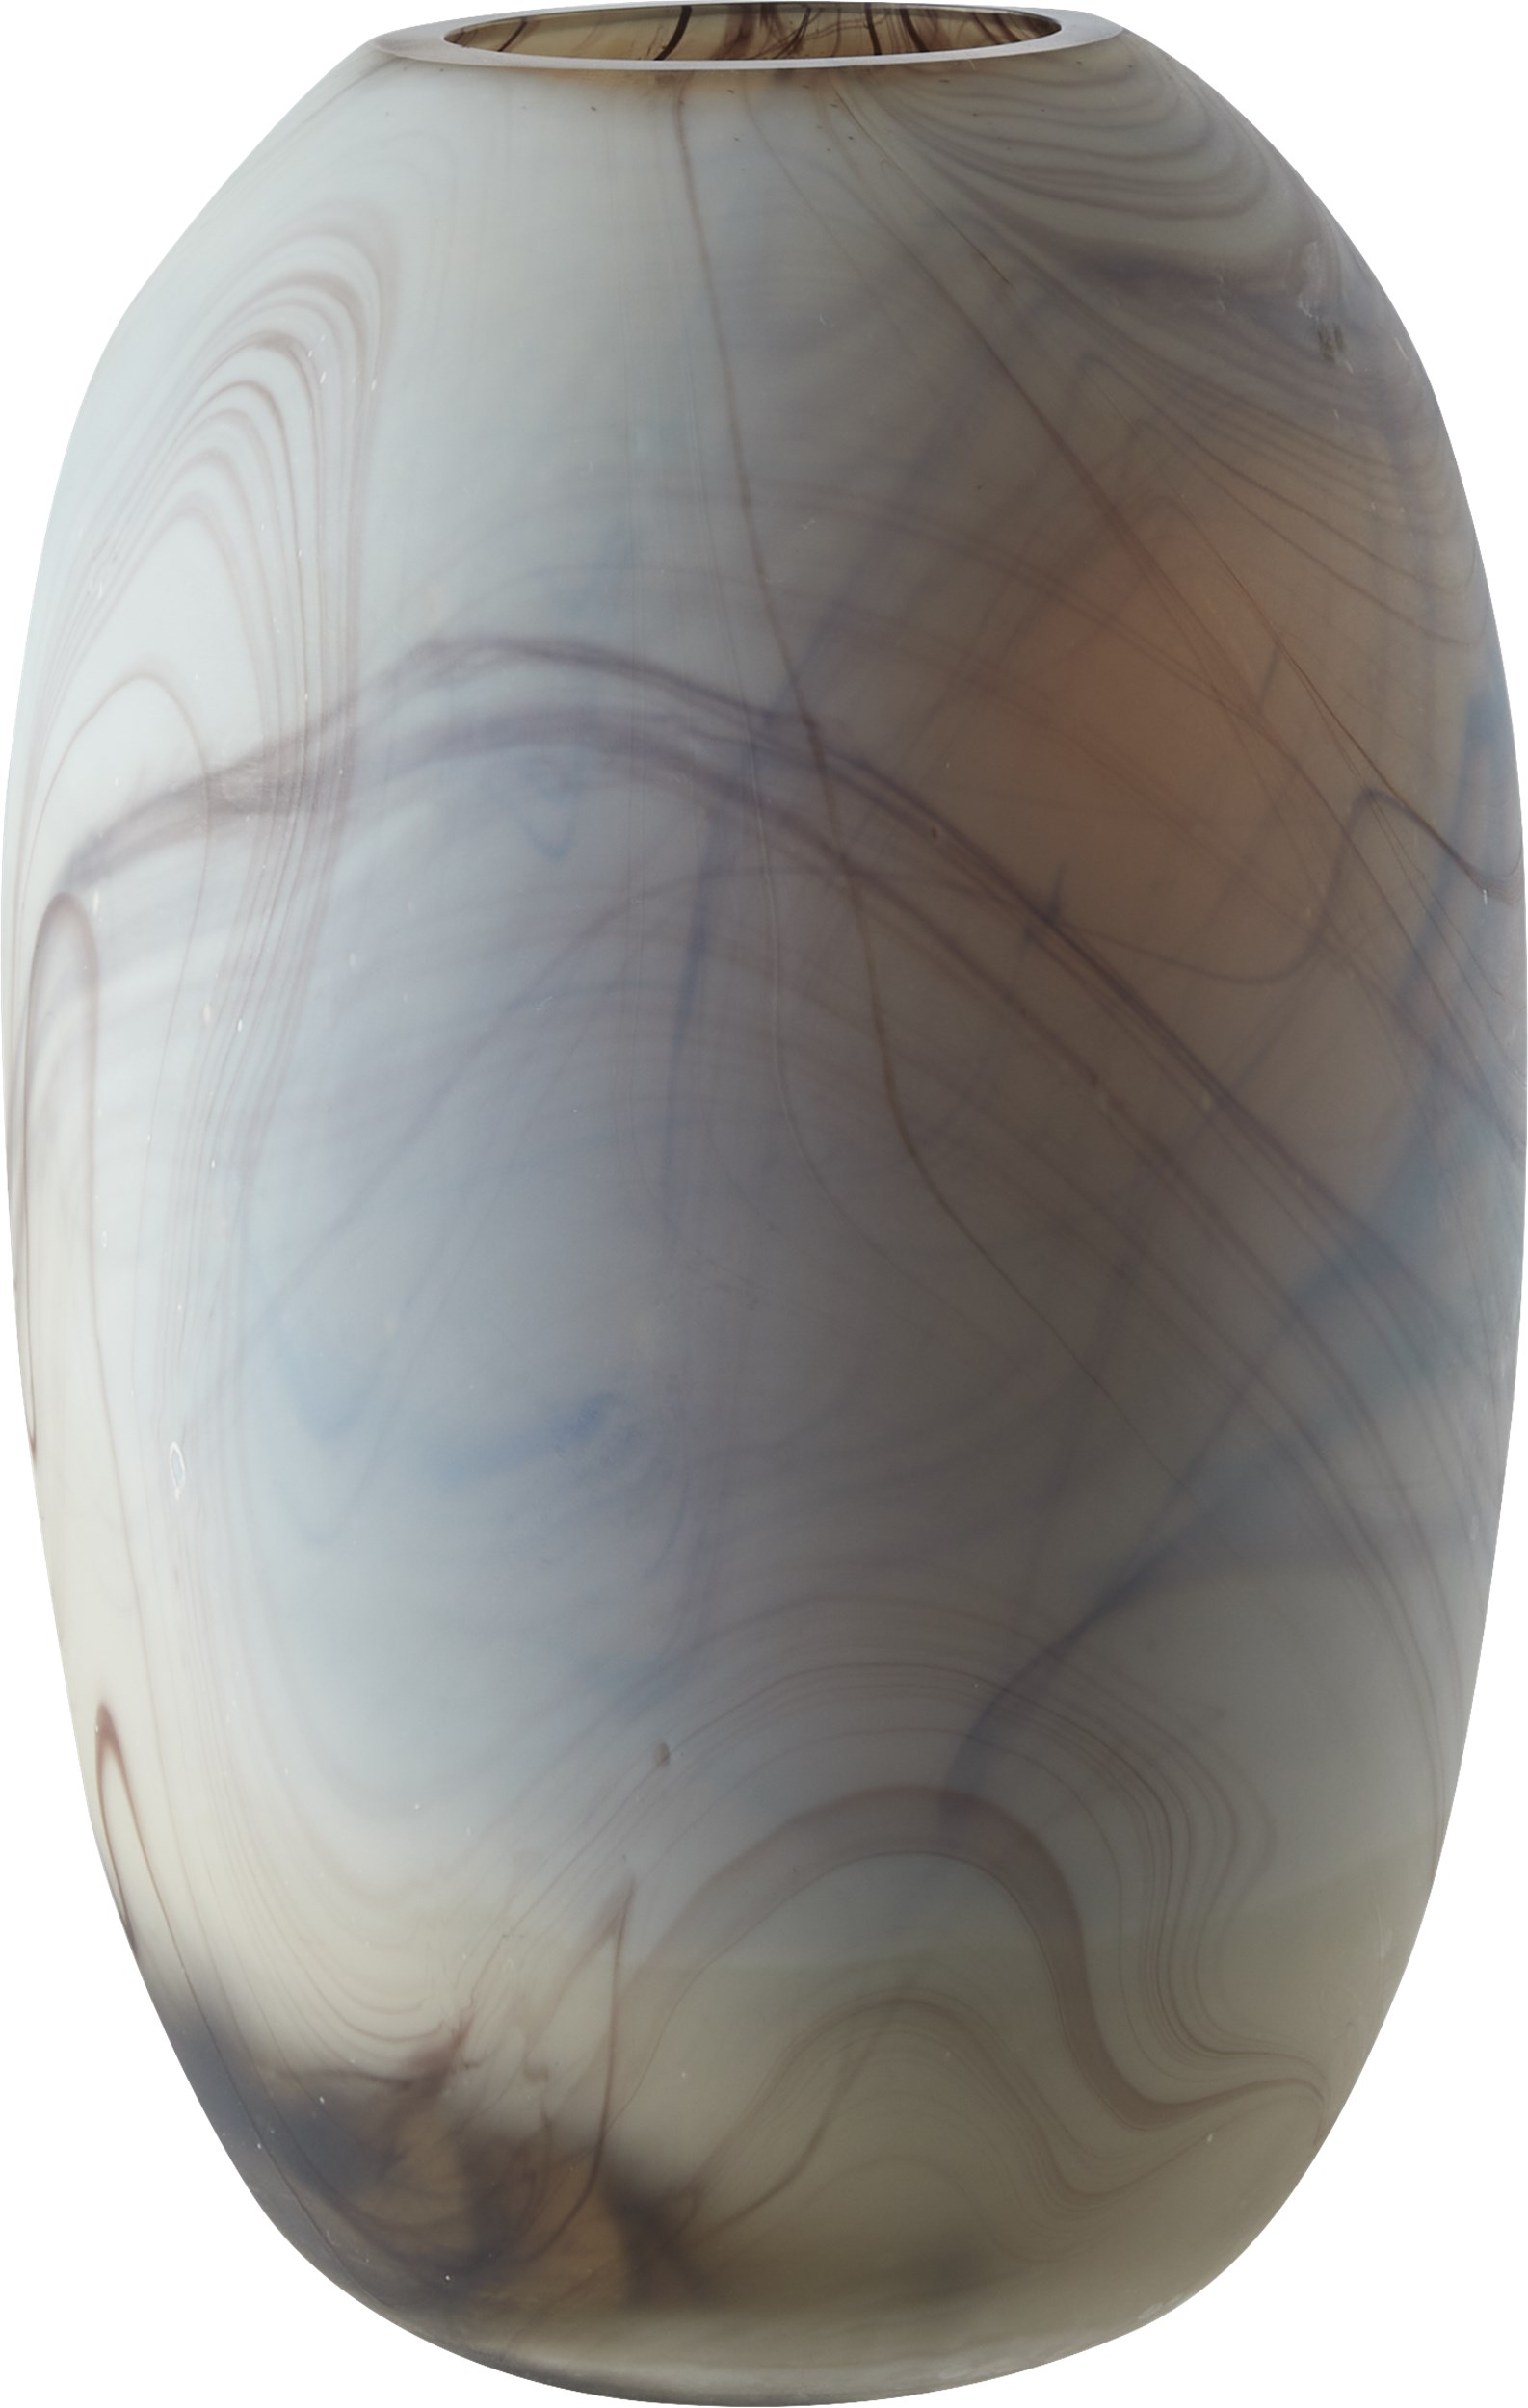 Electra vas 29 x 19 cm - Offwhite glas och marmorerat blått/ockrafärgat mönster